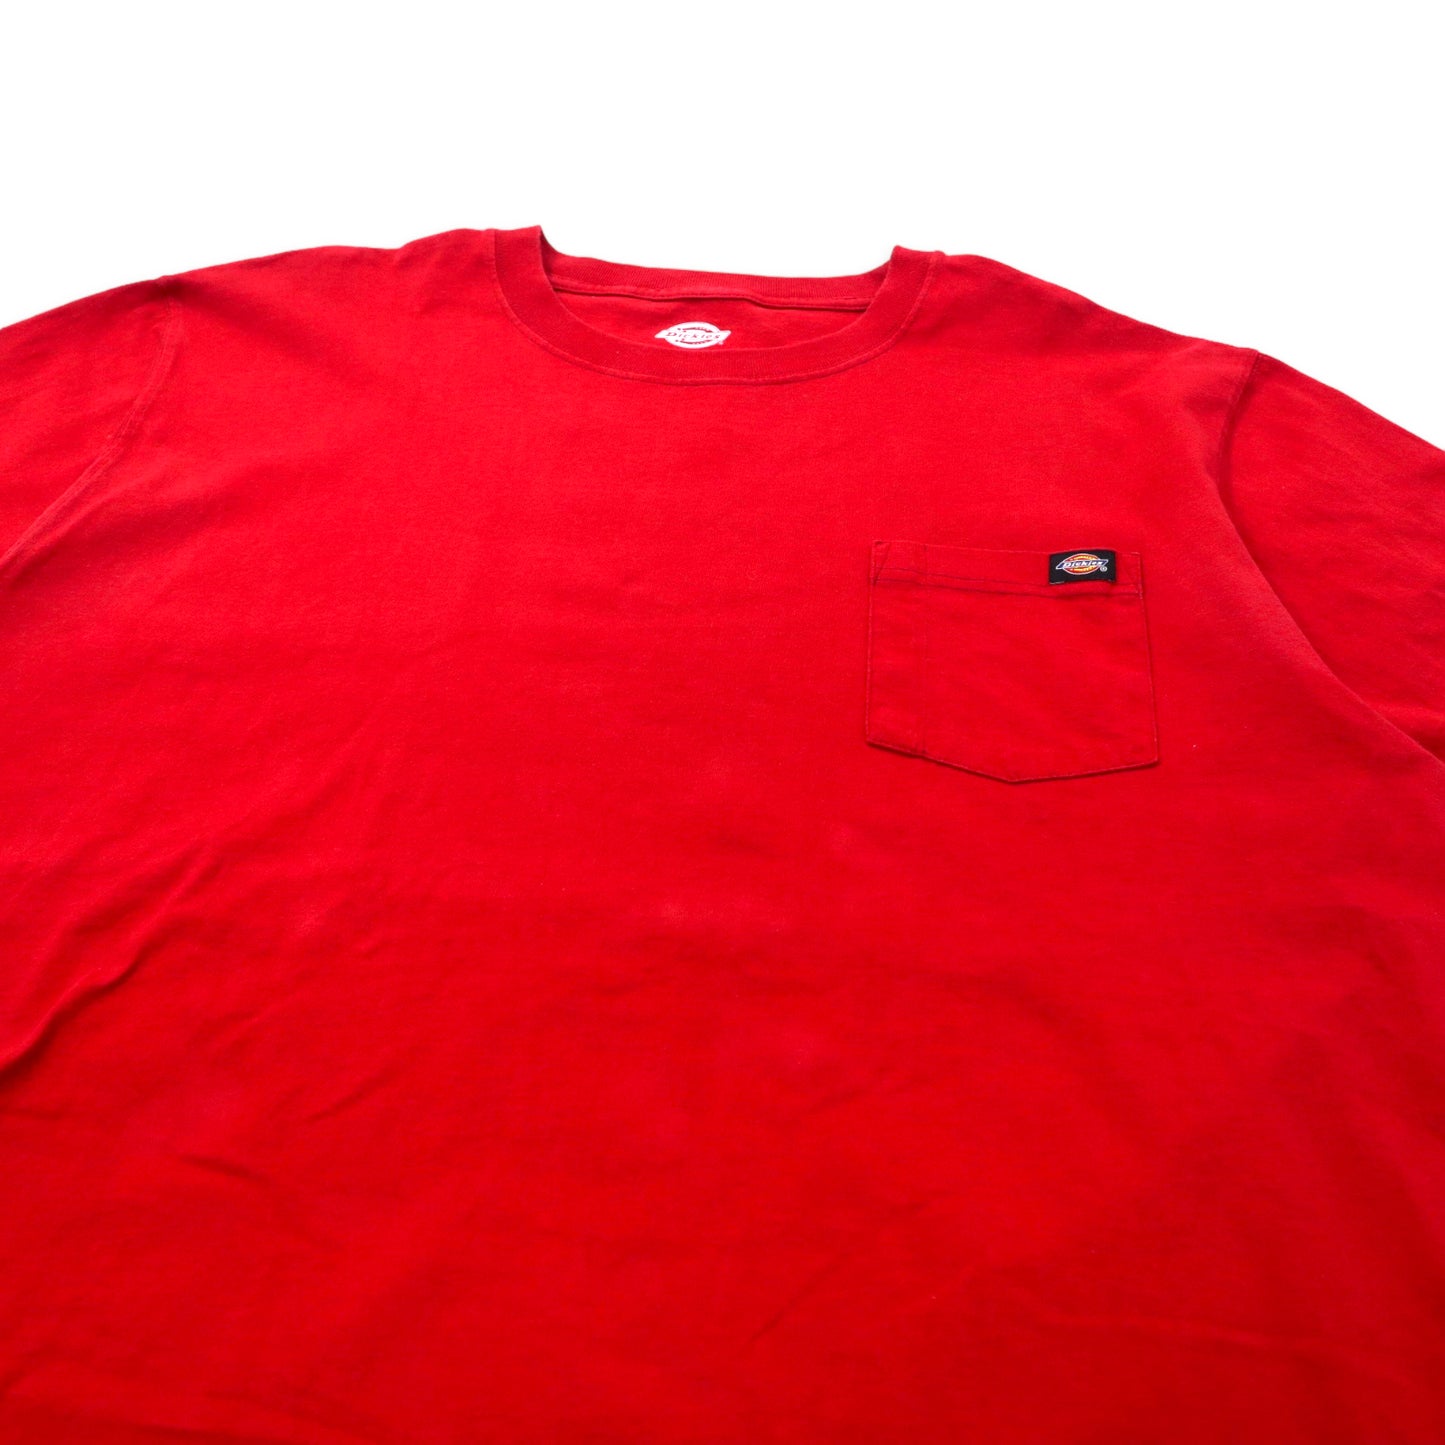 Dickies ポケットTシャツ 2XLT レッド コットン ビッグサイズ メキシコ製